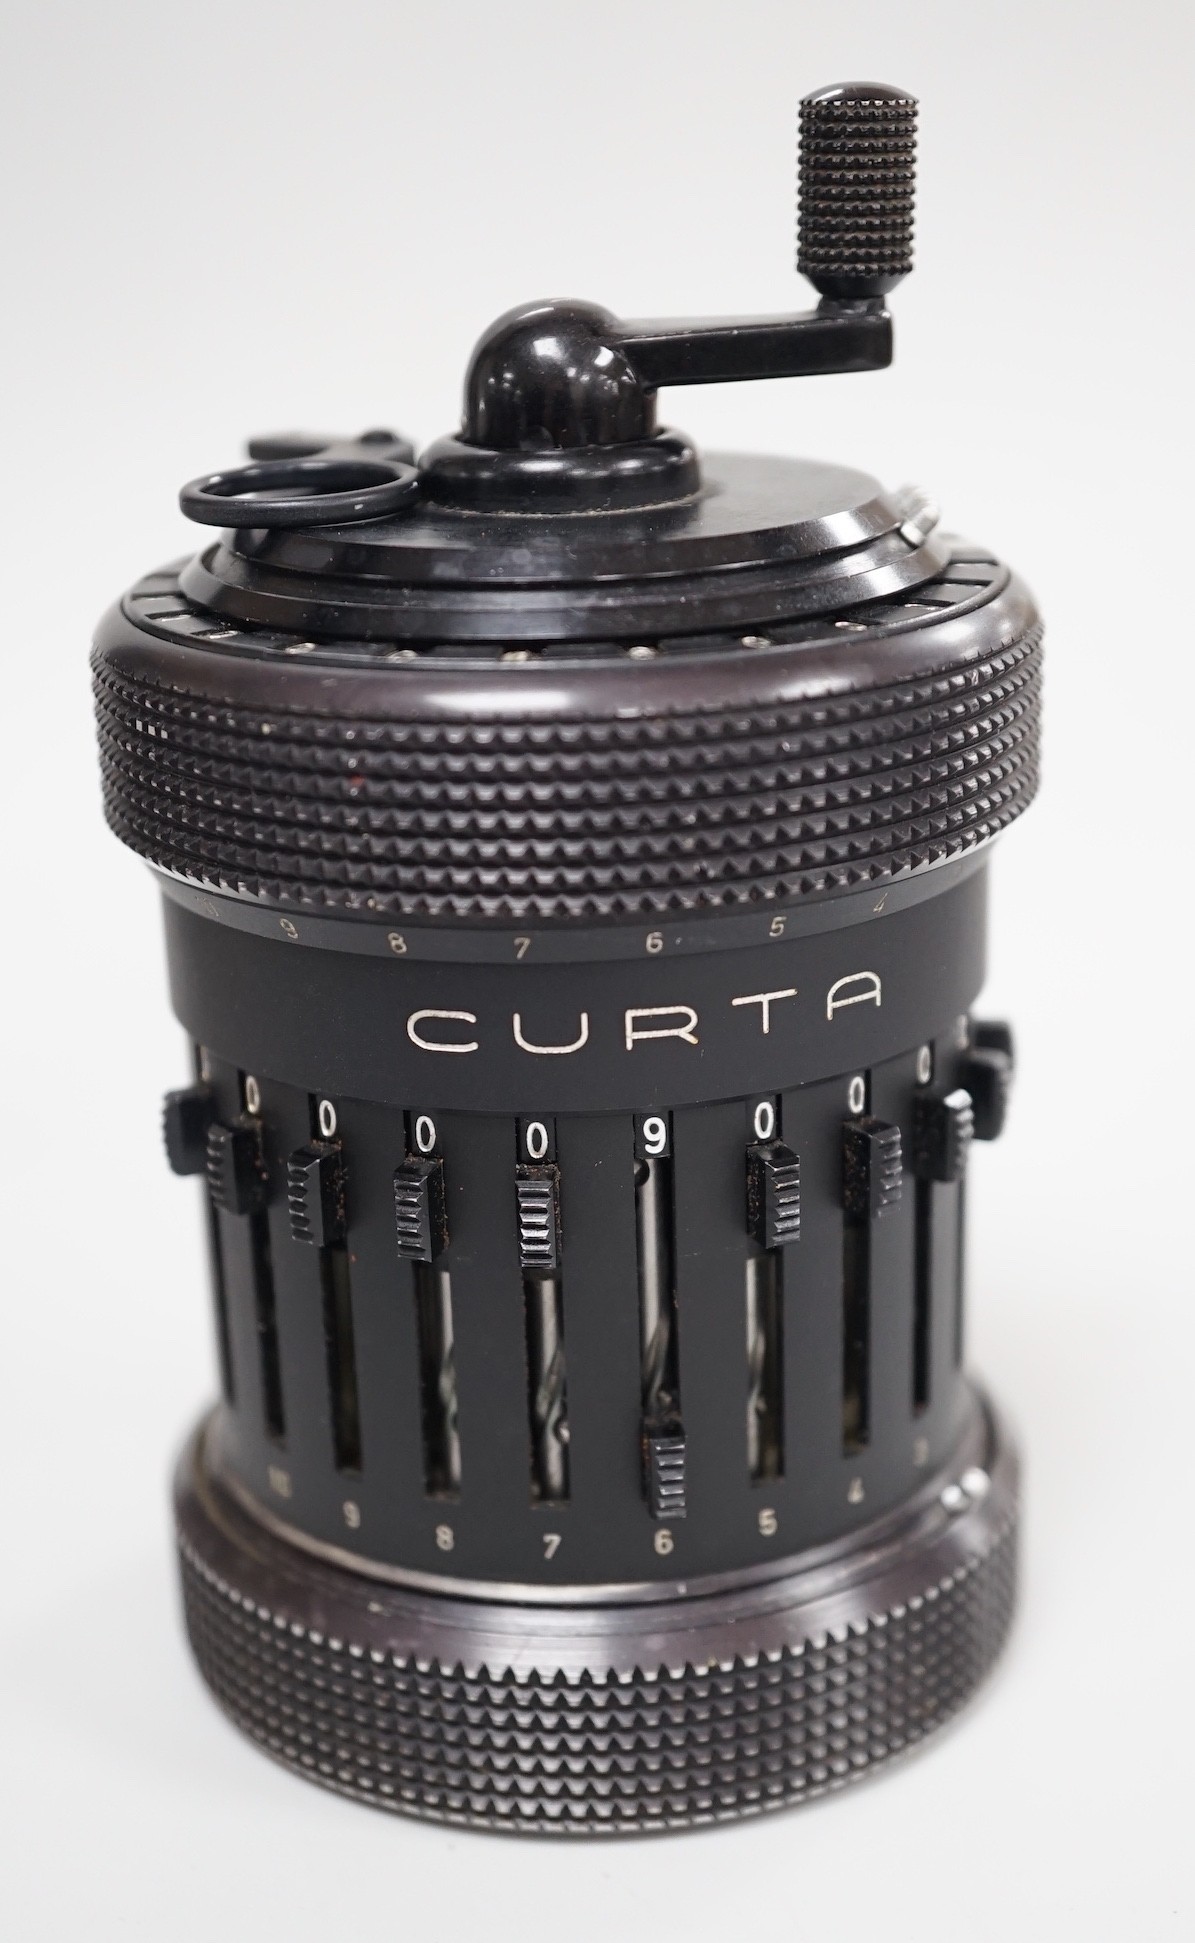 A Curta calculator, serial number 507479